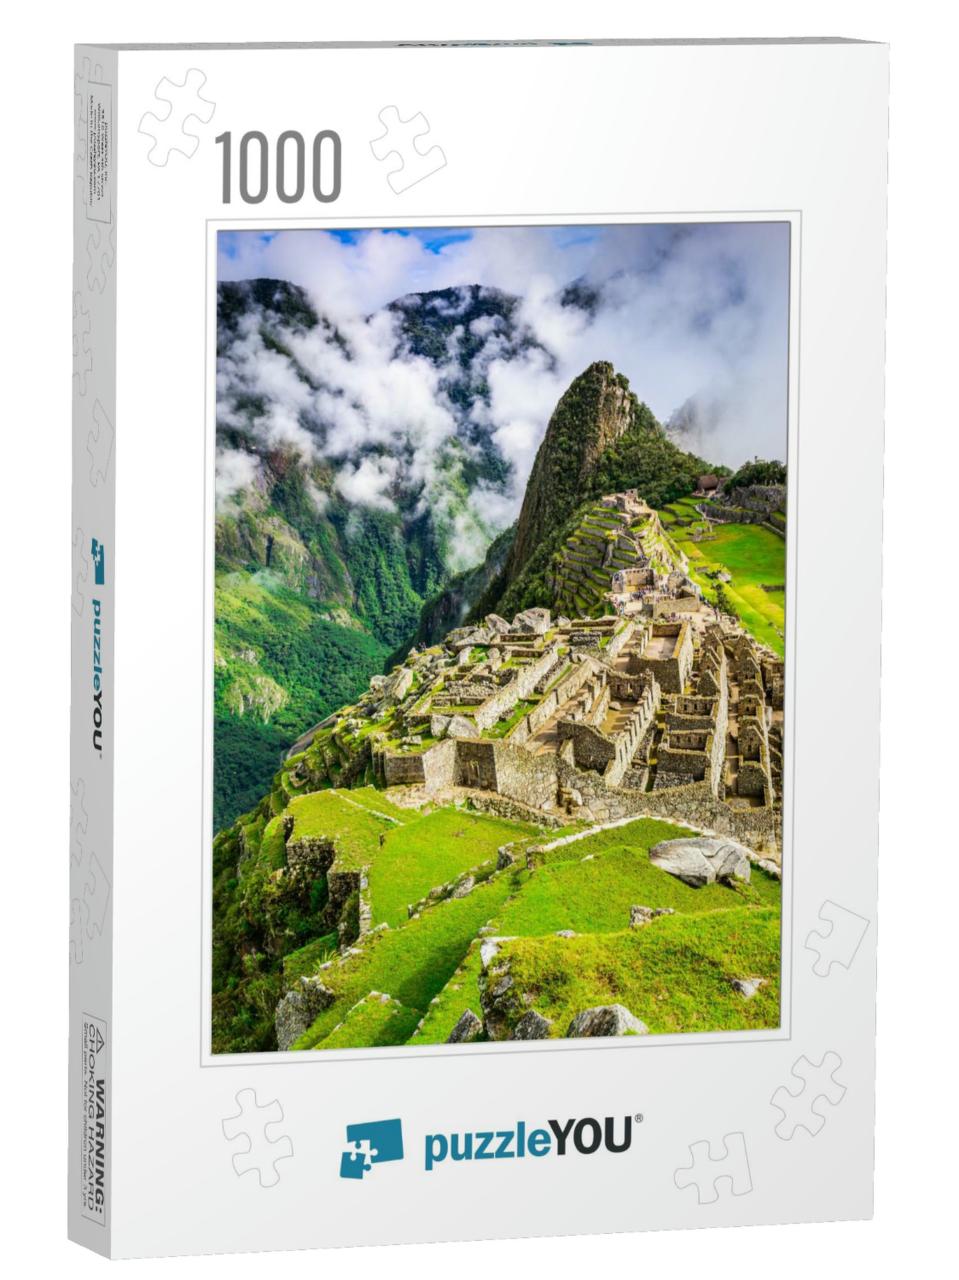 Machu Picchu, Peru - Ruins of Inca Empire City, in Cusco... Jigsaw Puzzle with 1000 pieces